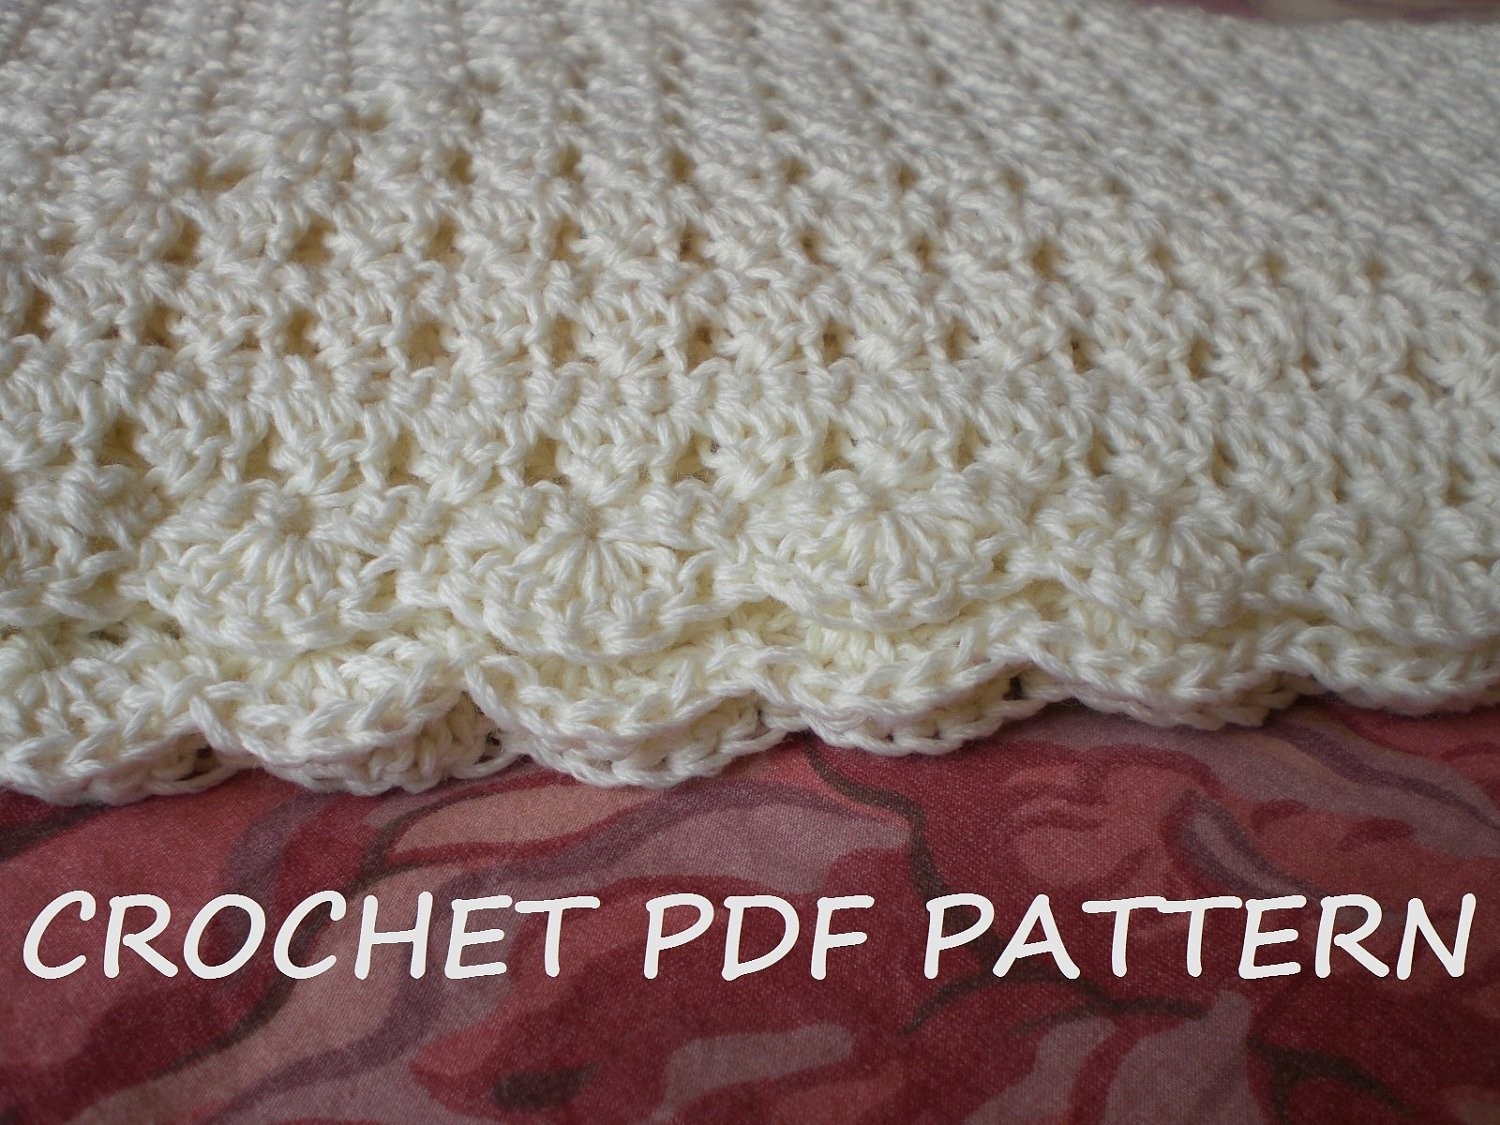 Crochet Blanket Pattern For Beginners Crocheted Ba Blankets Patterns Free Free Fast Easy Crochet Blanket